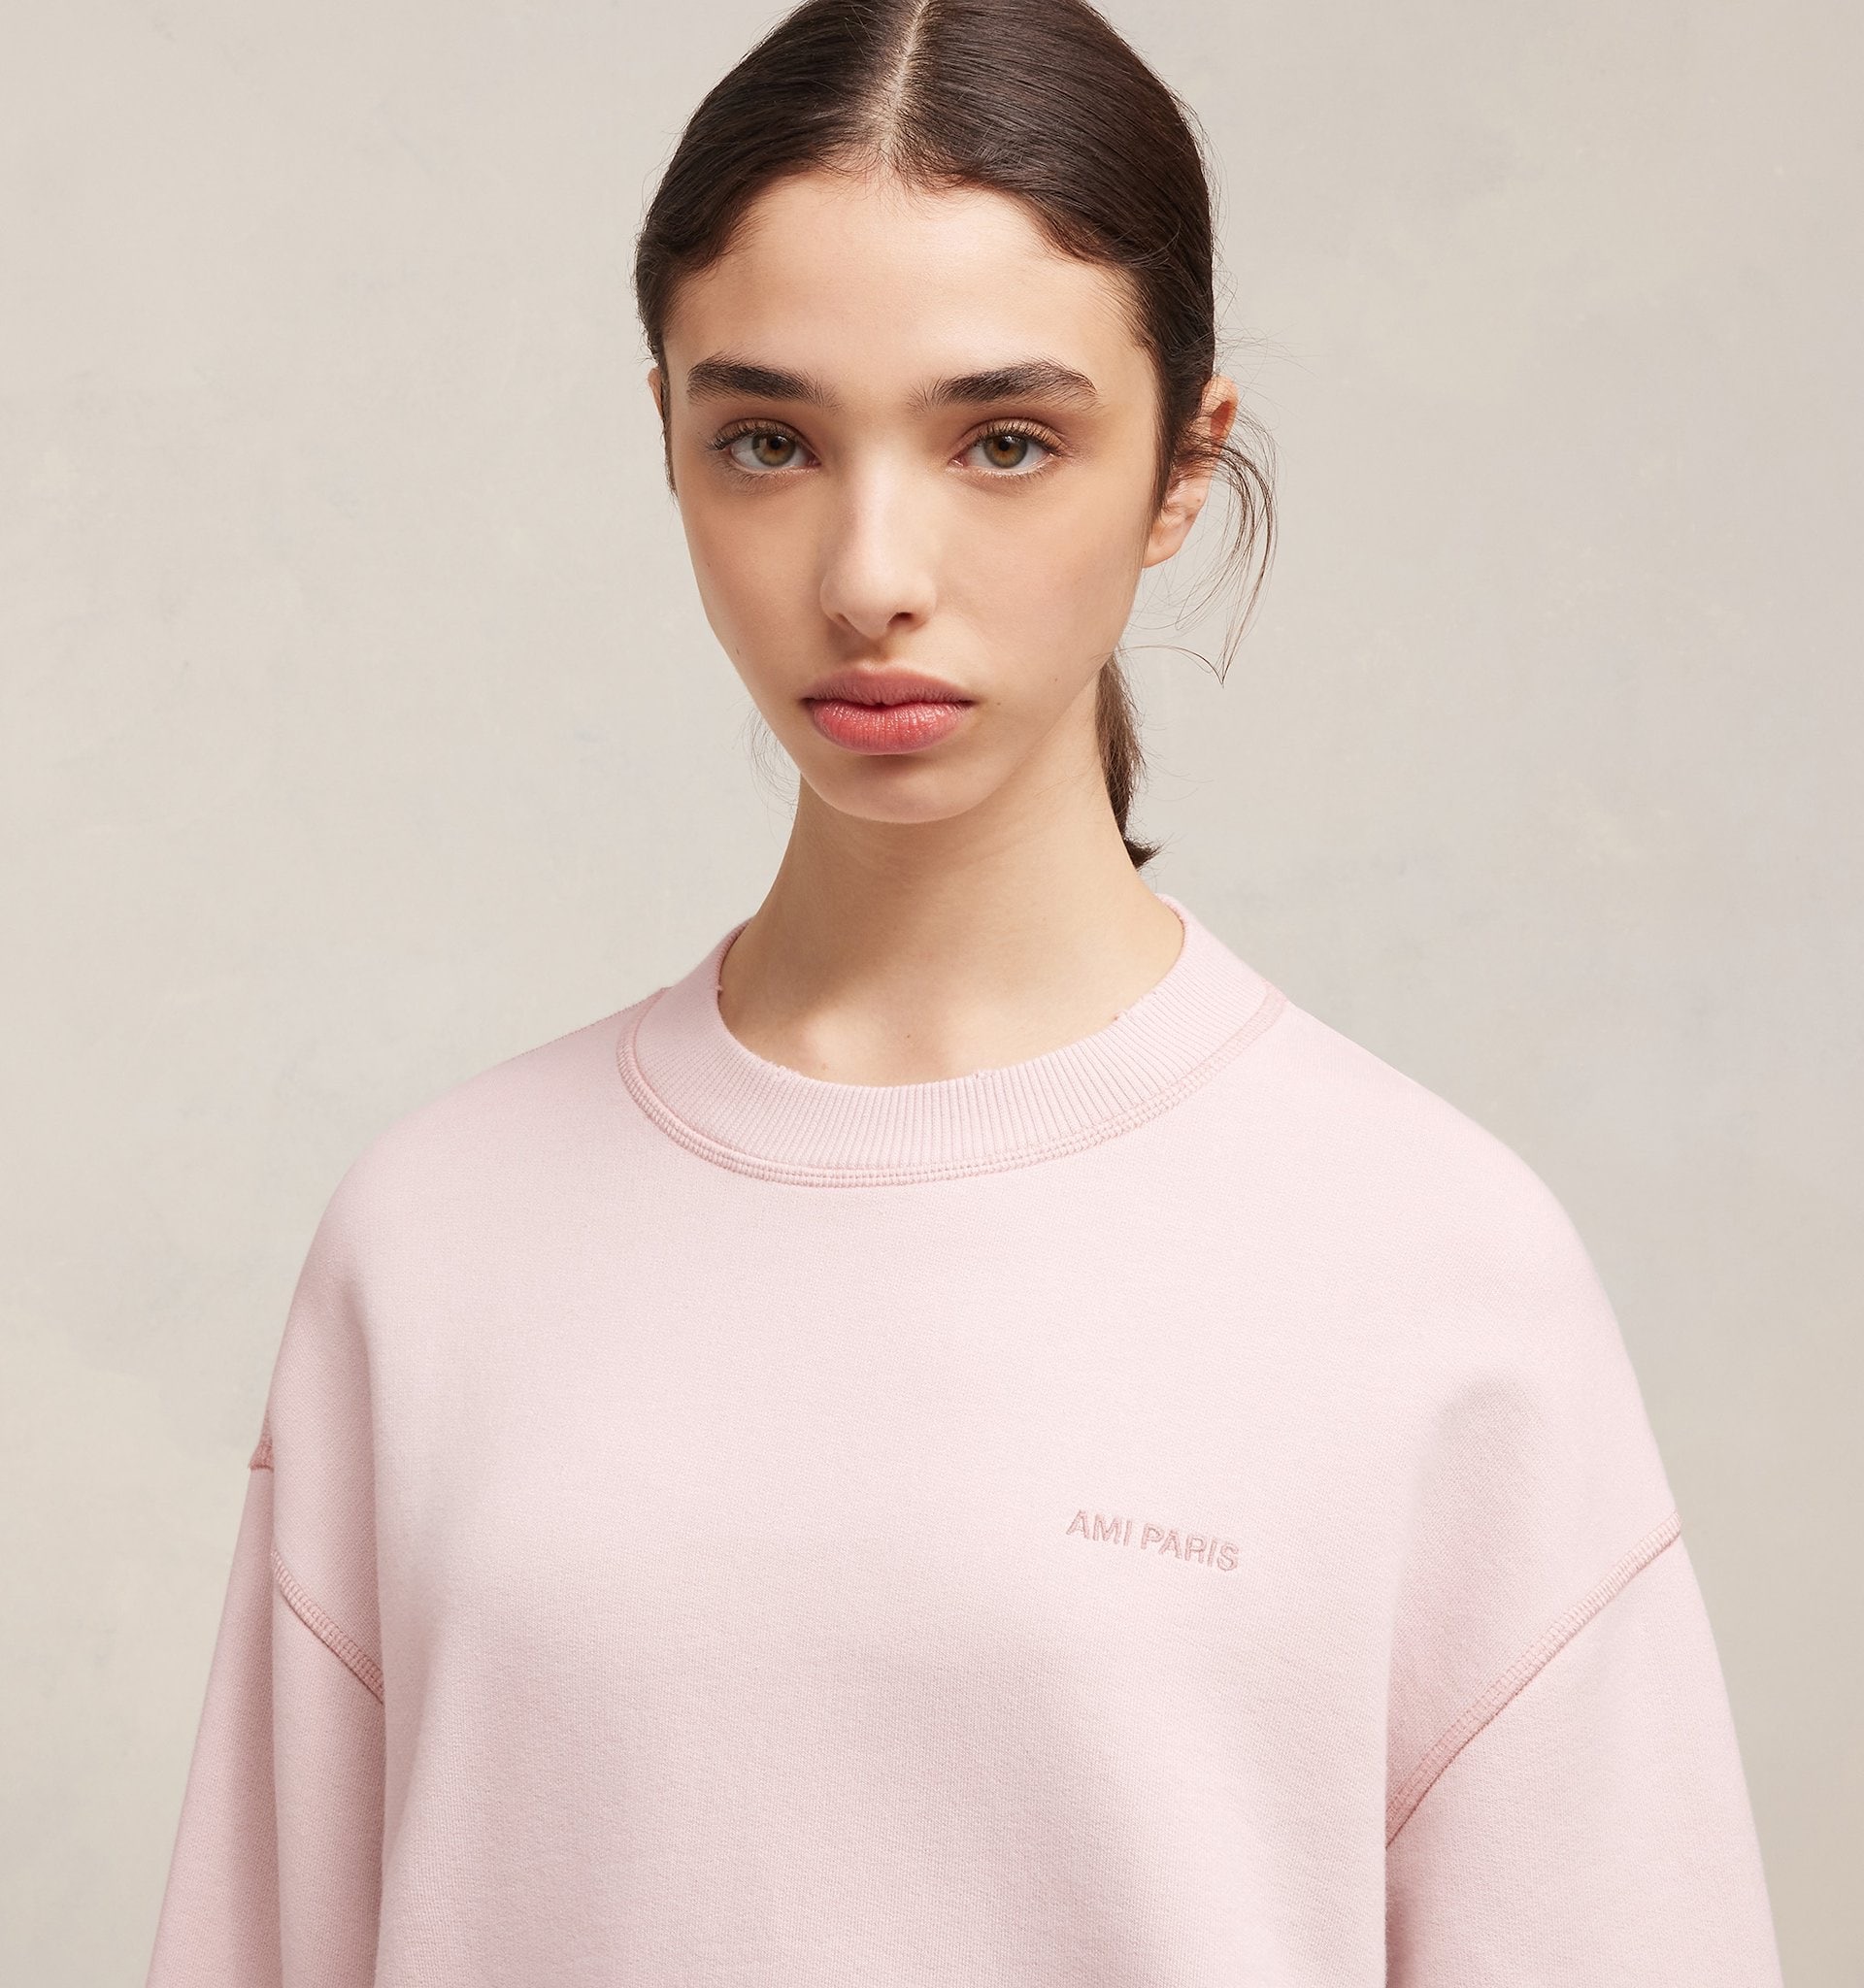 Sweatshirt fade out AMI in Nude Pink, AMI PARIS, USW016.JE0052679